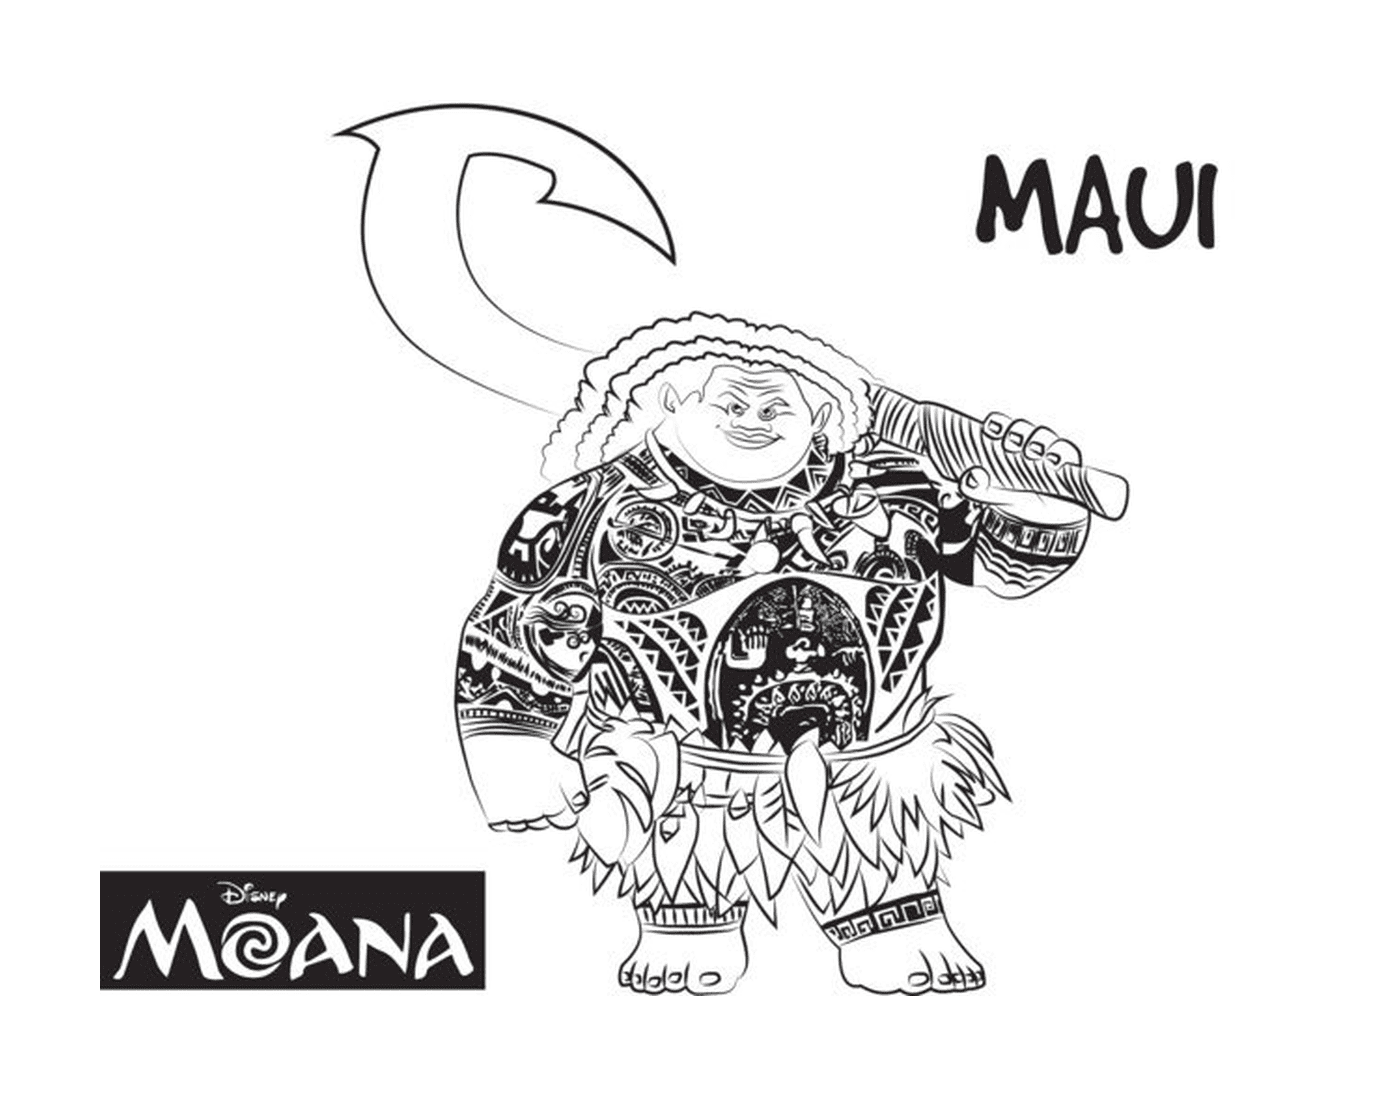  Maui, uomo forte di Moana 